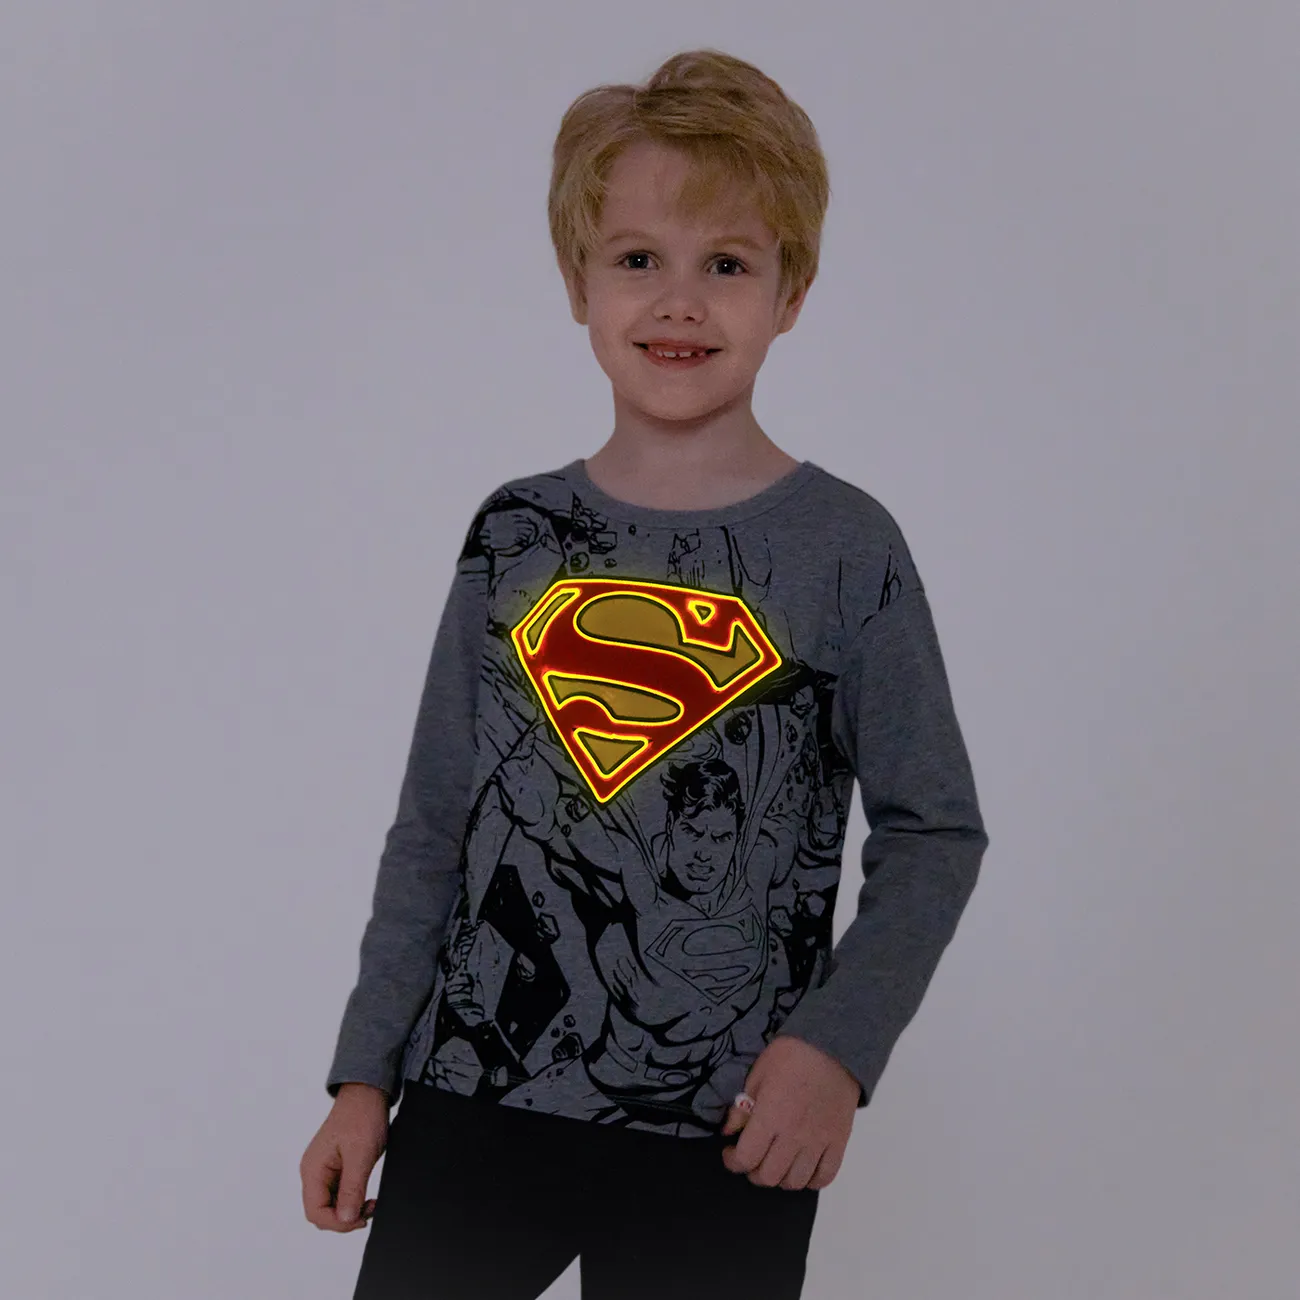 Go-Glow Illuminating Grey Sweatshirt mit leuchtendem Superman-Muster grau gesprenkelt big image 1